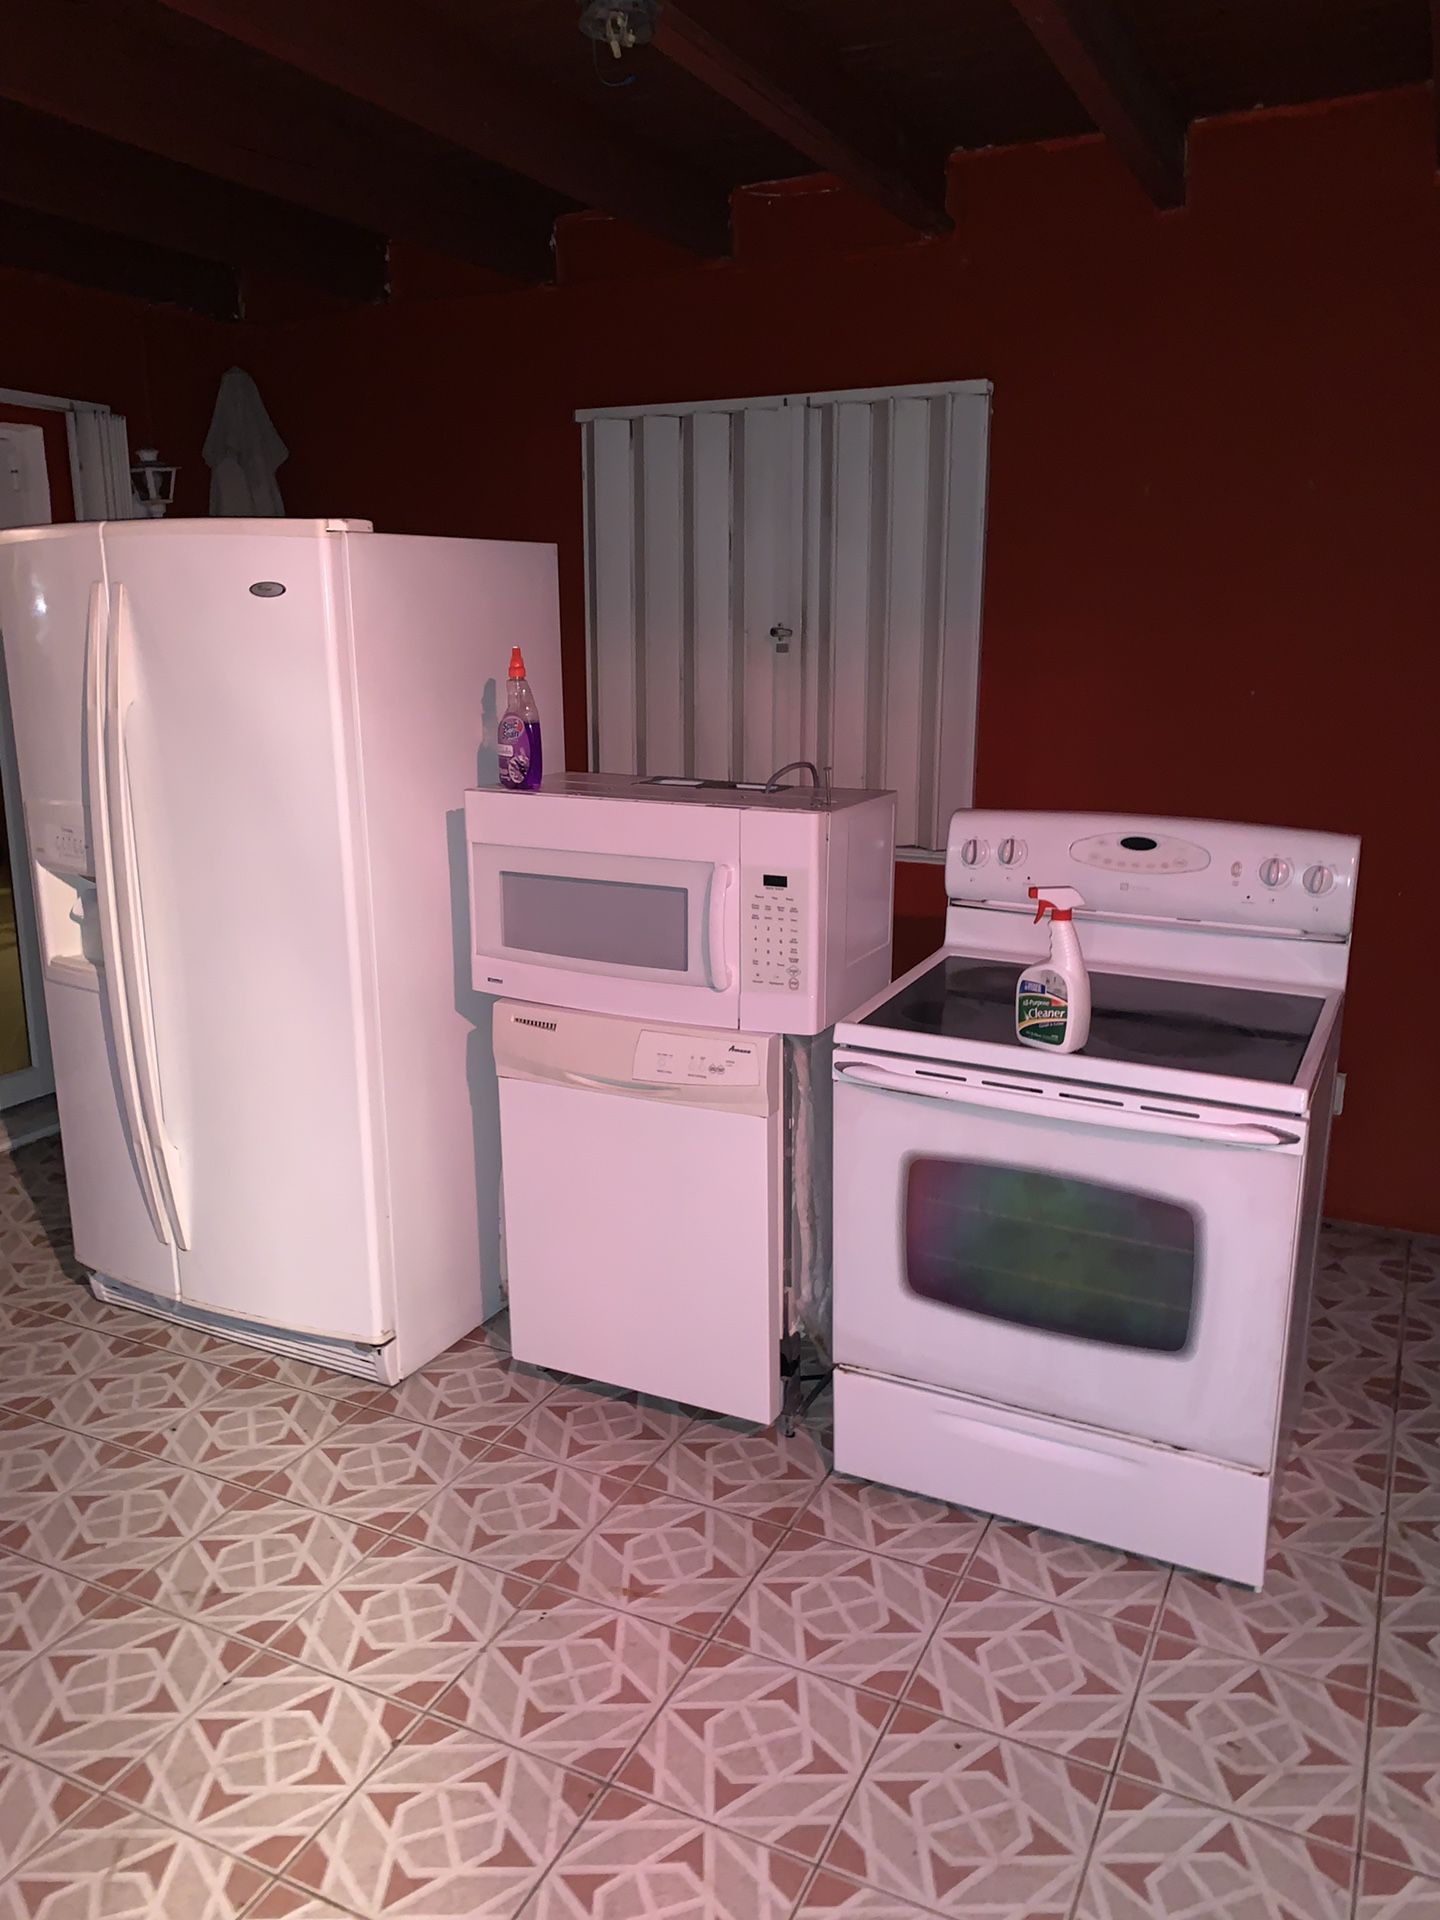 Kitchen Appliance set